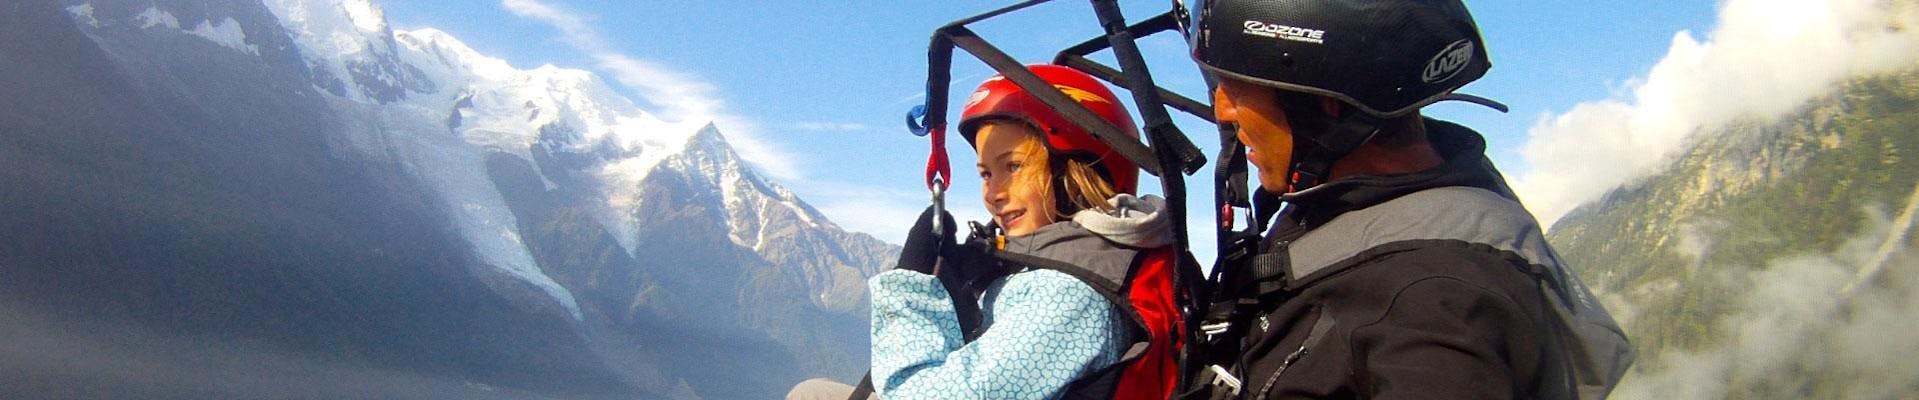 Volo panoramico in parapendio biposto a Chamonix (da 4 anni) - Mont Blanc.